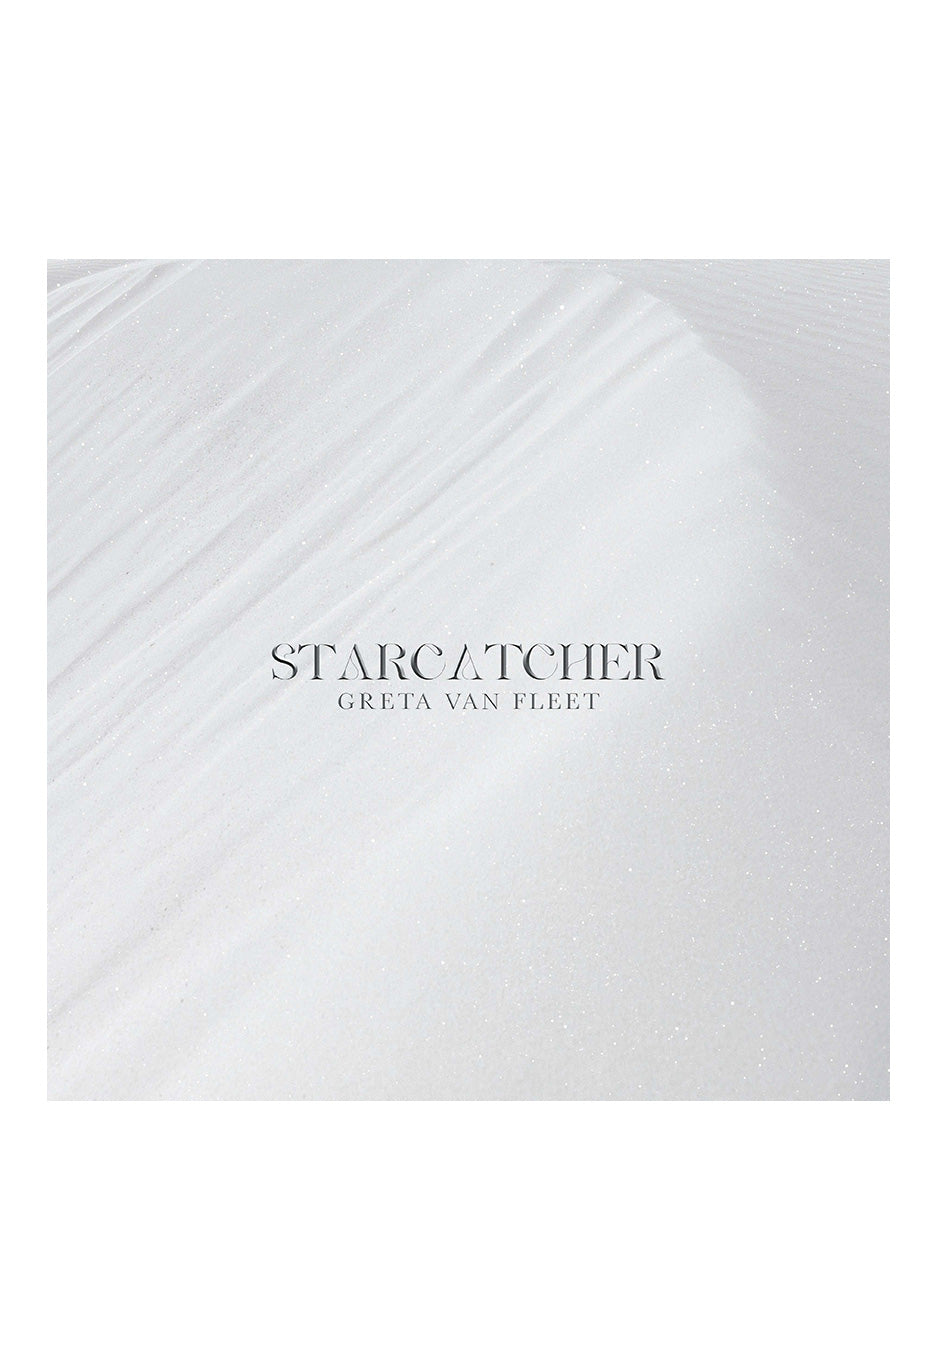 Greta Van Fleet - Starcatcher Clear - Colored Vinyl